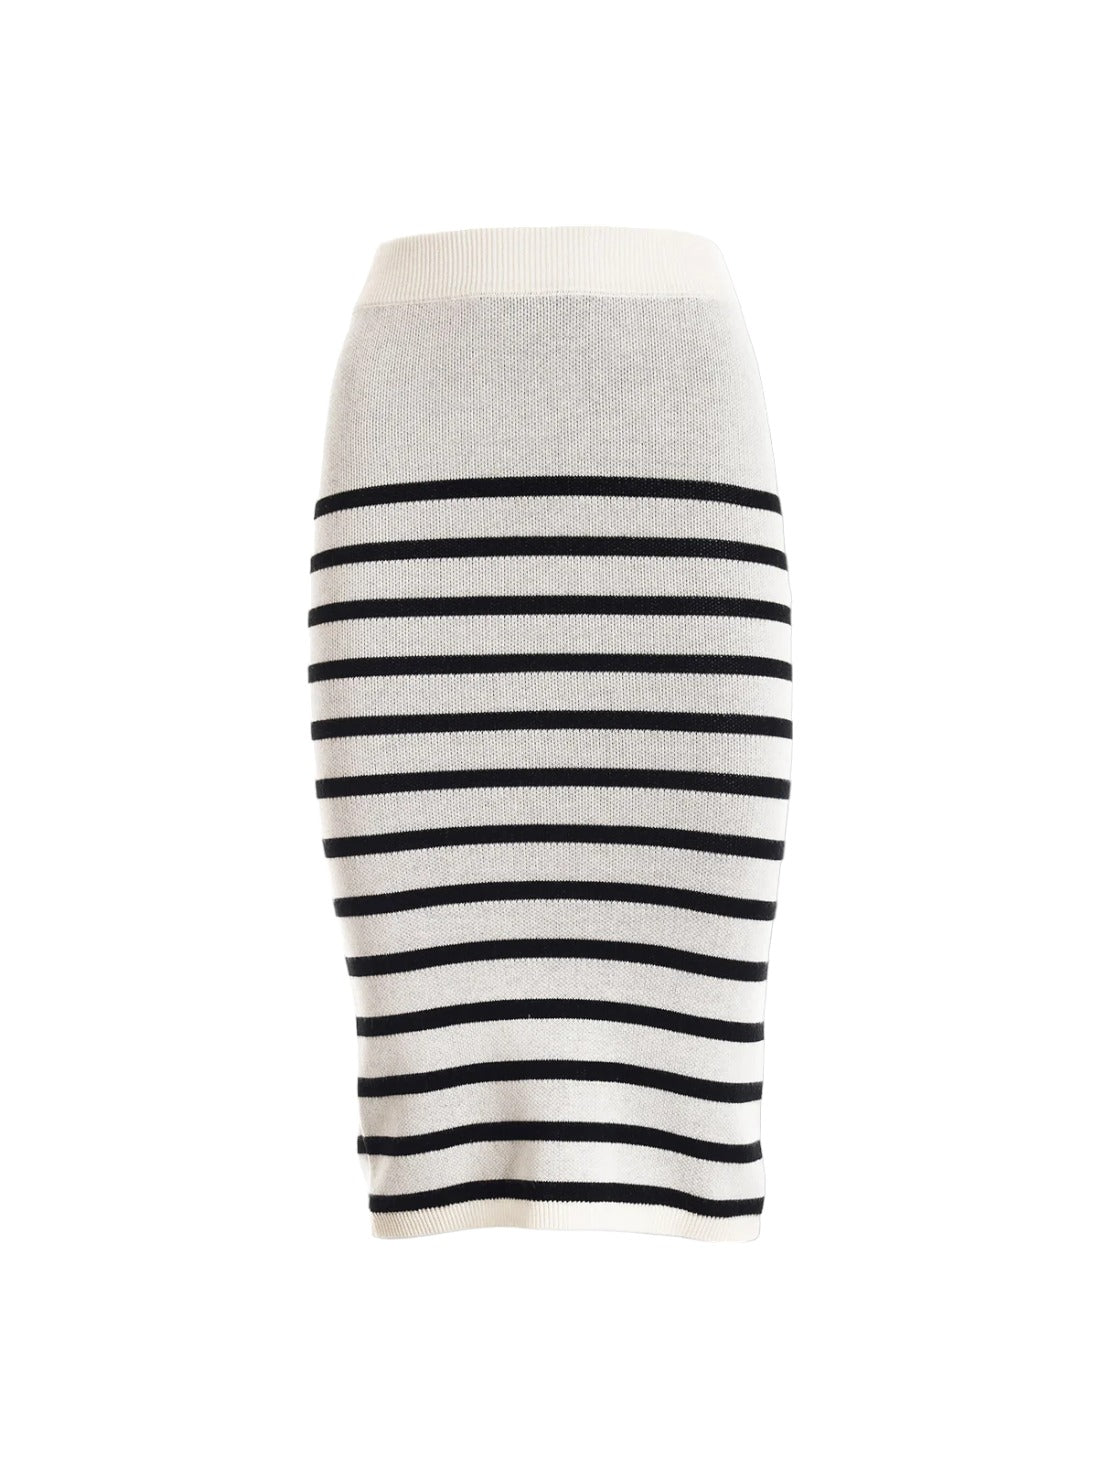 Fracomina Donna striped skirt